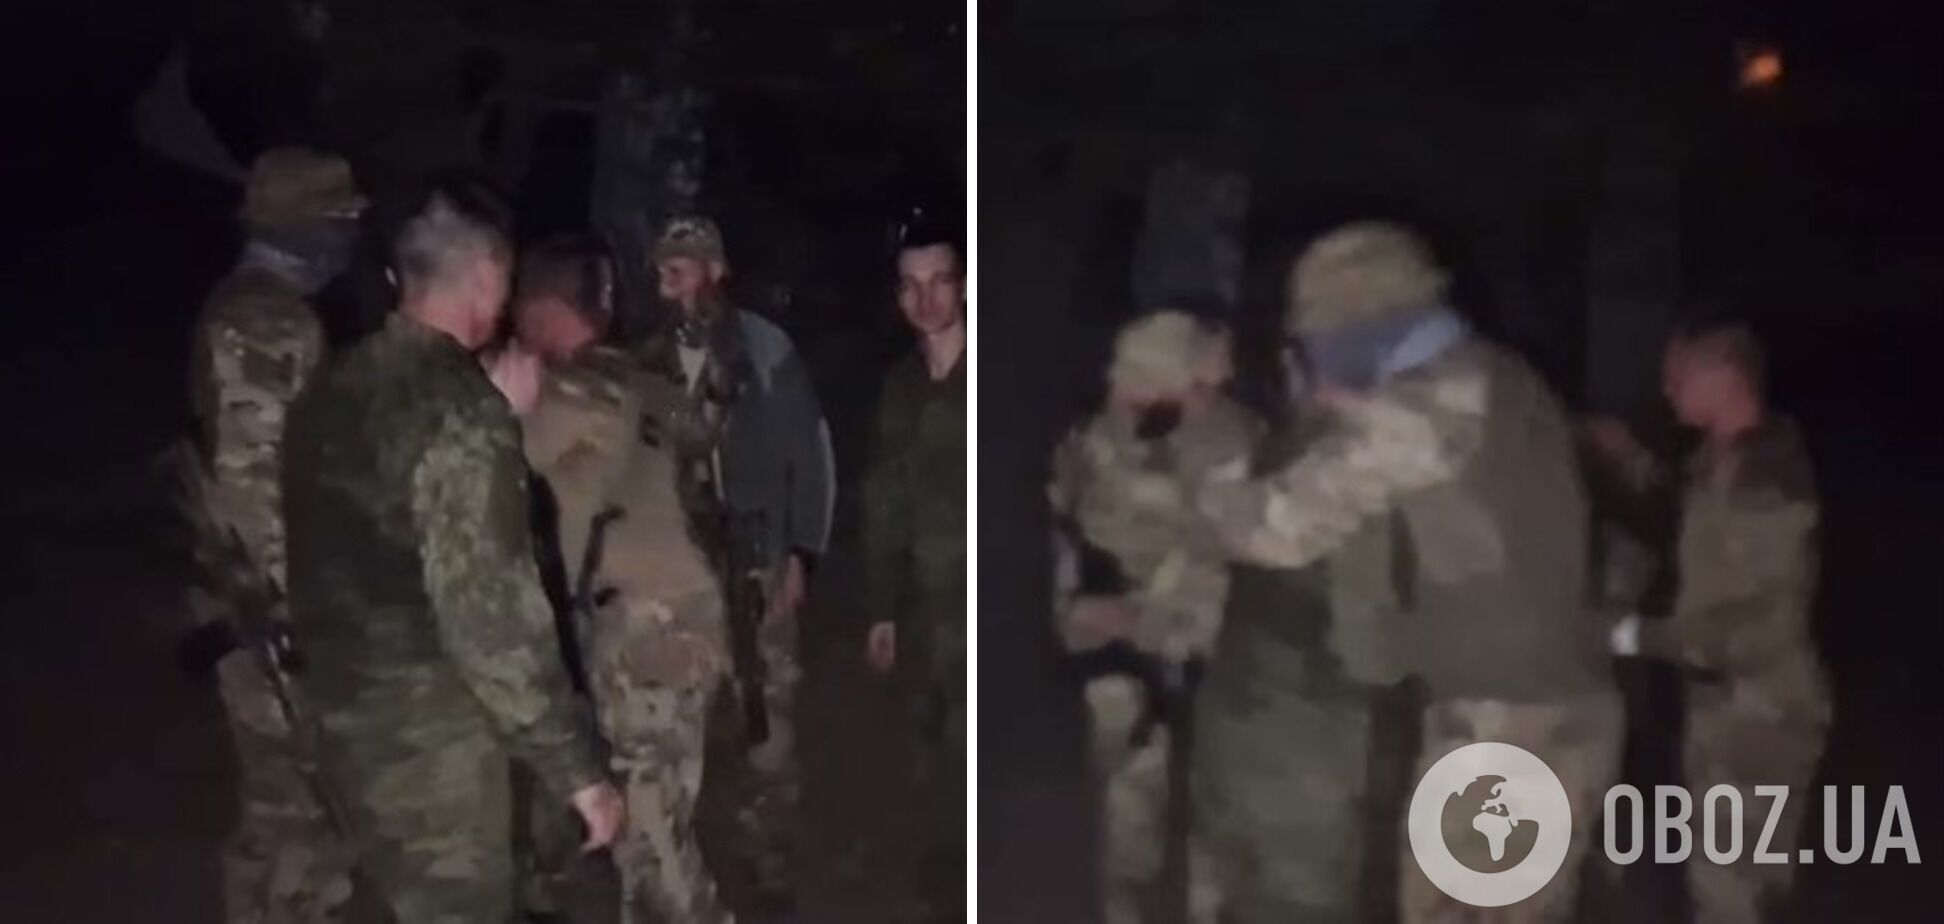 Важливе кожне життя: ВМС та ГУР провели успішну спецоперацію з визволення двох українських десантників. Відео